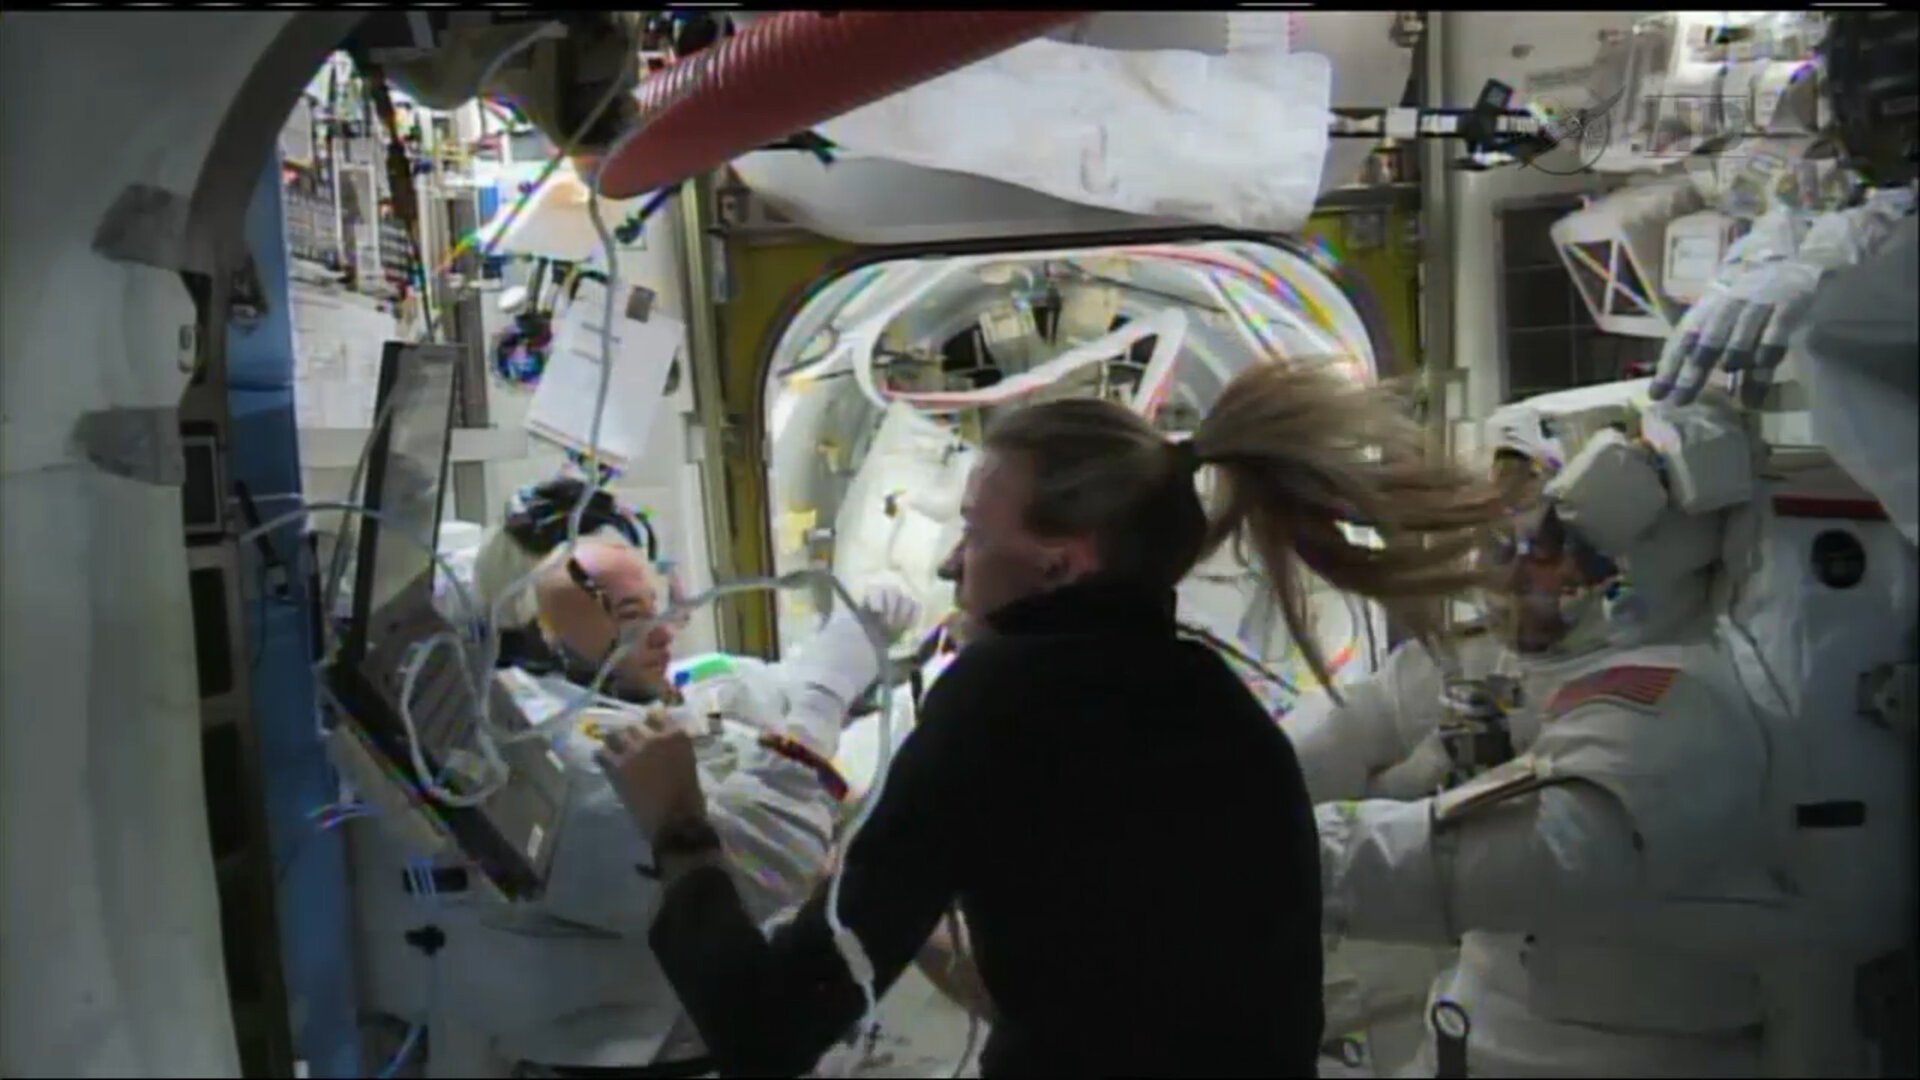 NASA astronaut Karen Nyberg helps Luca Parmitano remove his helmet and suit